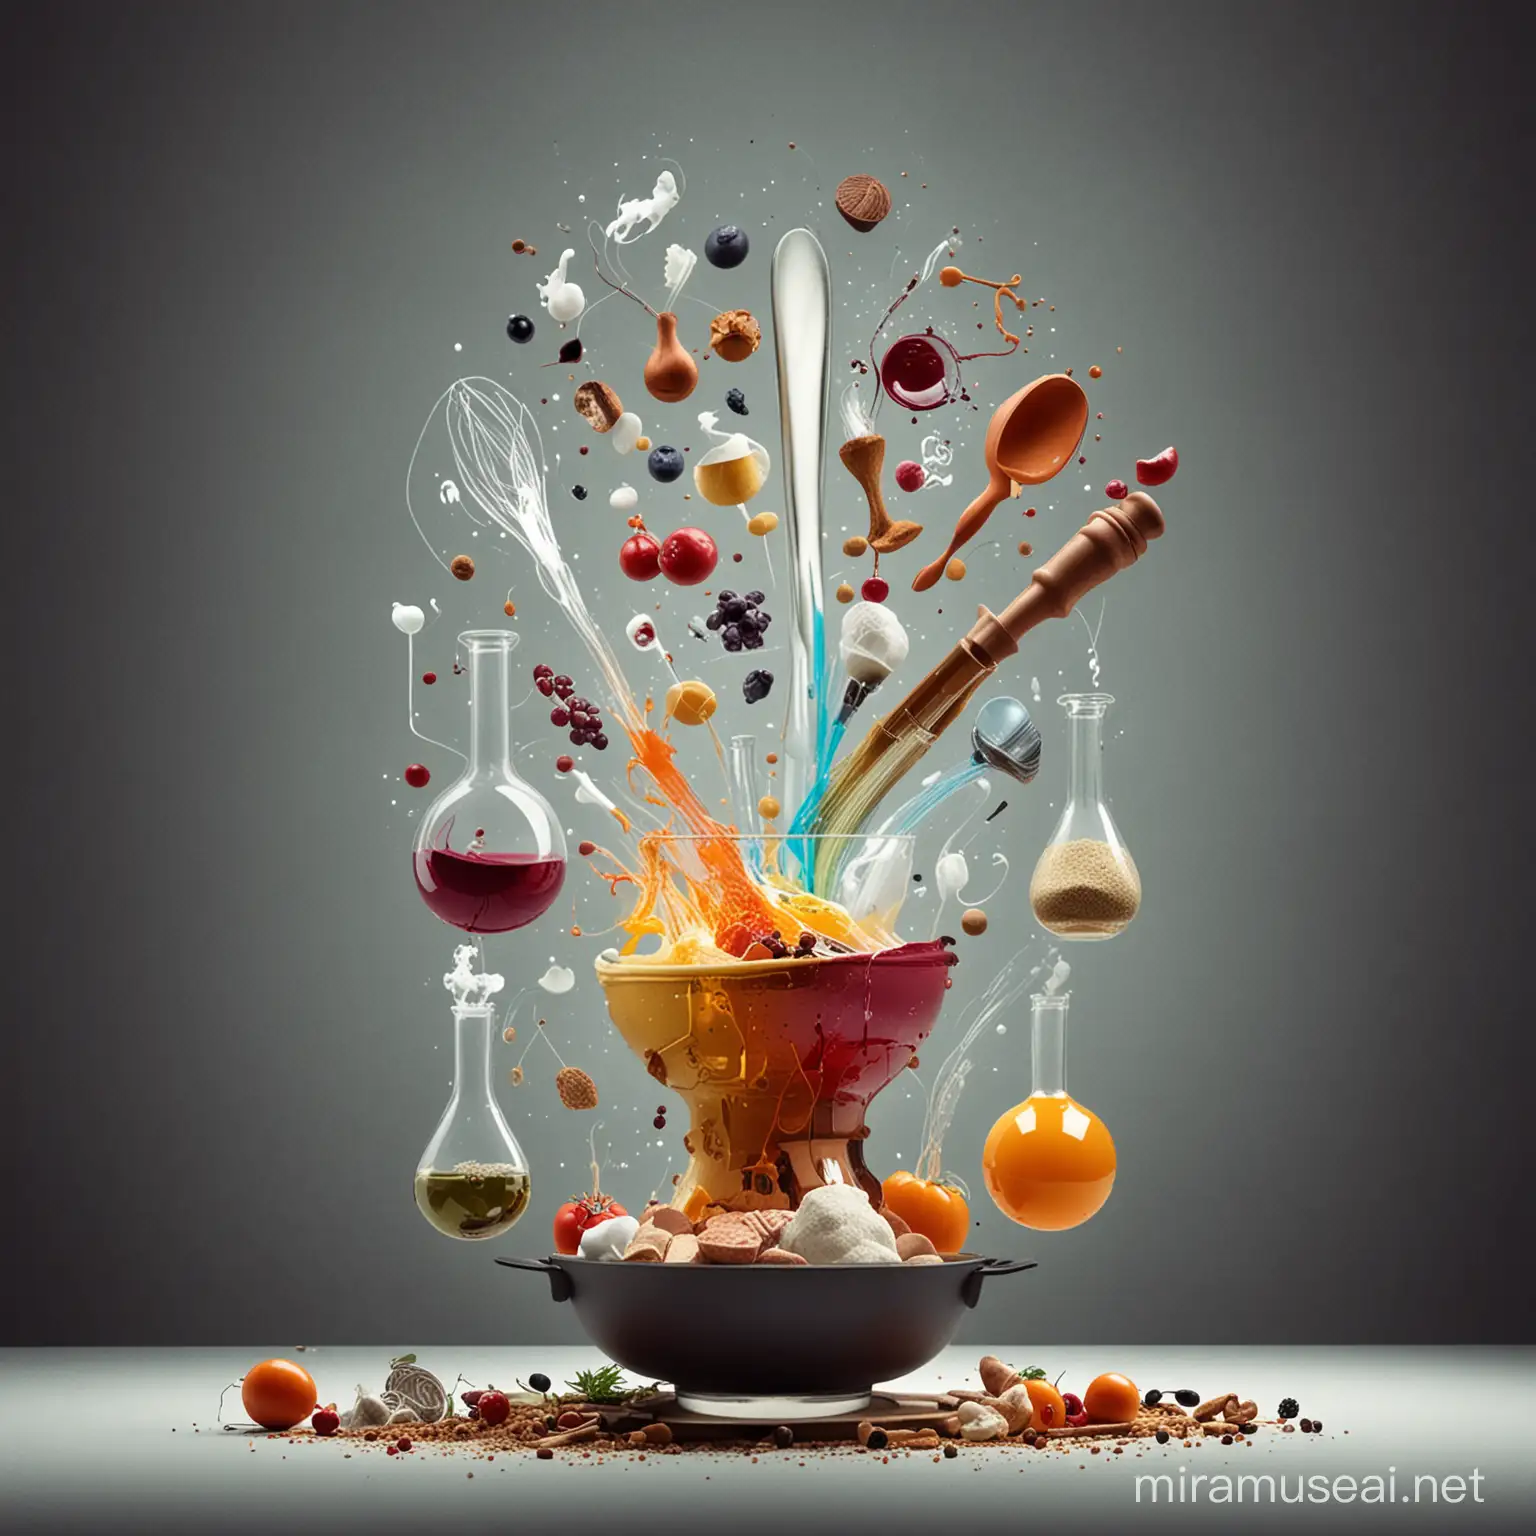 imagen abstracta con temática de cocina y laboratorio 